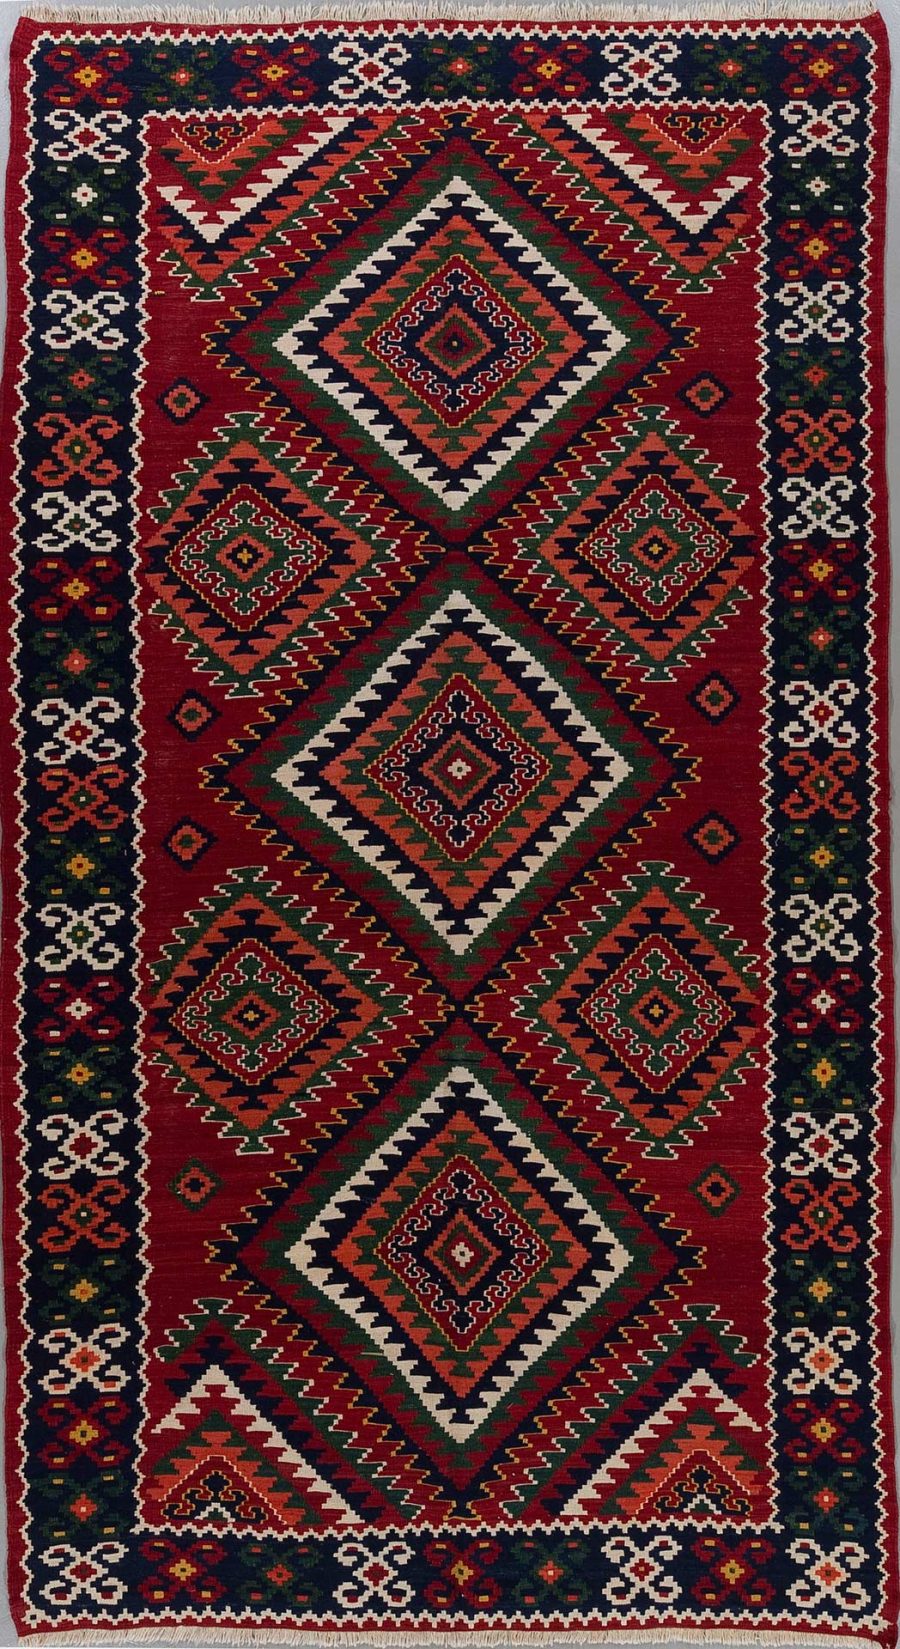 Traditioneller handgeknüpfter Teppich mit geometrischen Mustern und einem dominanten Rot, flankiert von grünen und beige Akzenten sowie Grenzdesigns in Dunkelblau und Weiß.